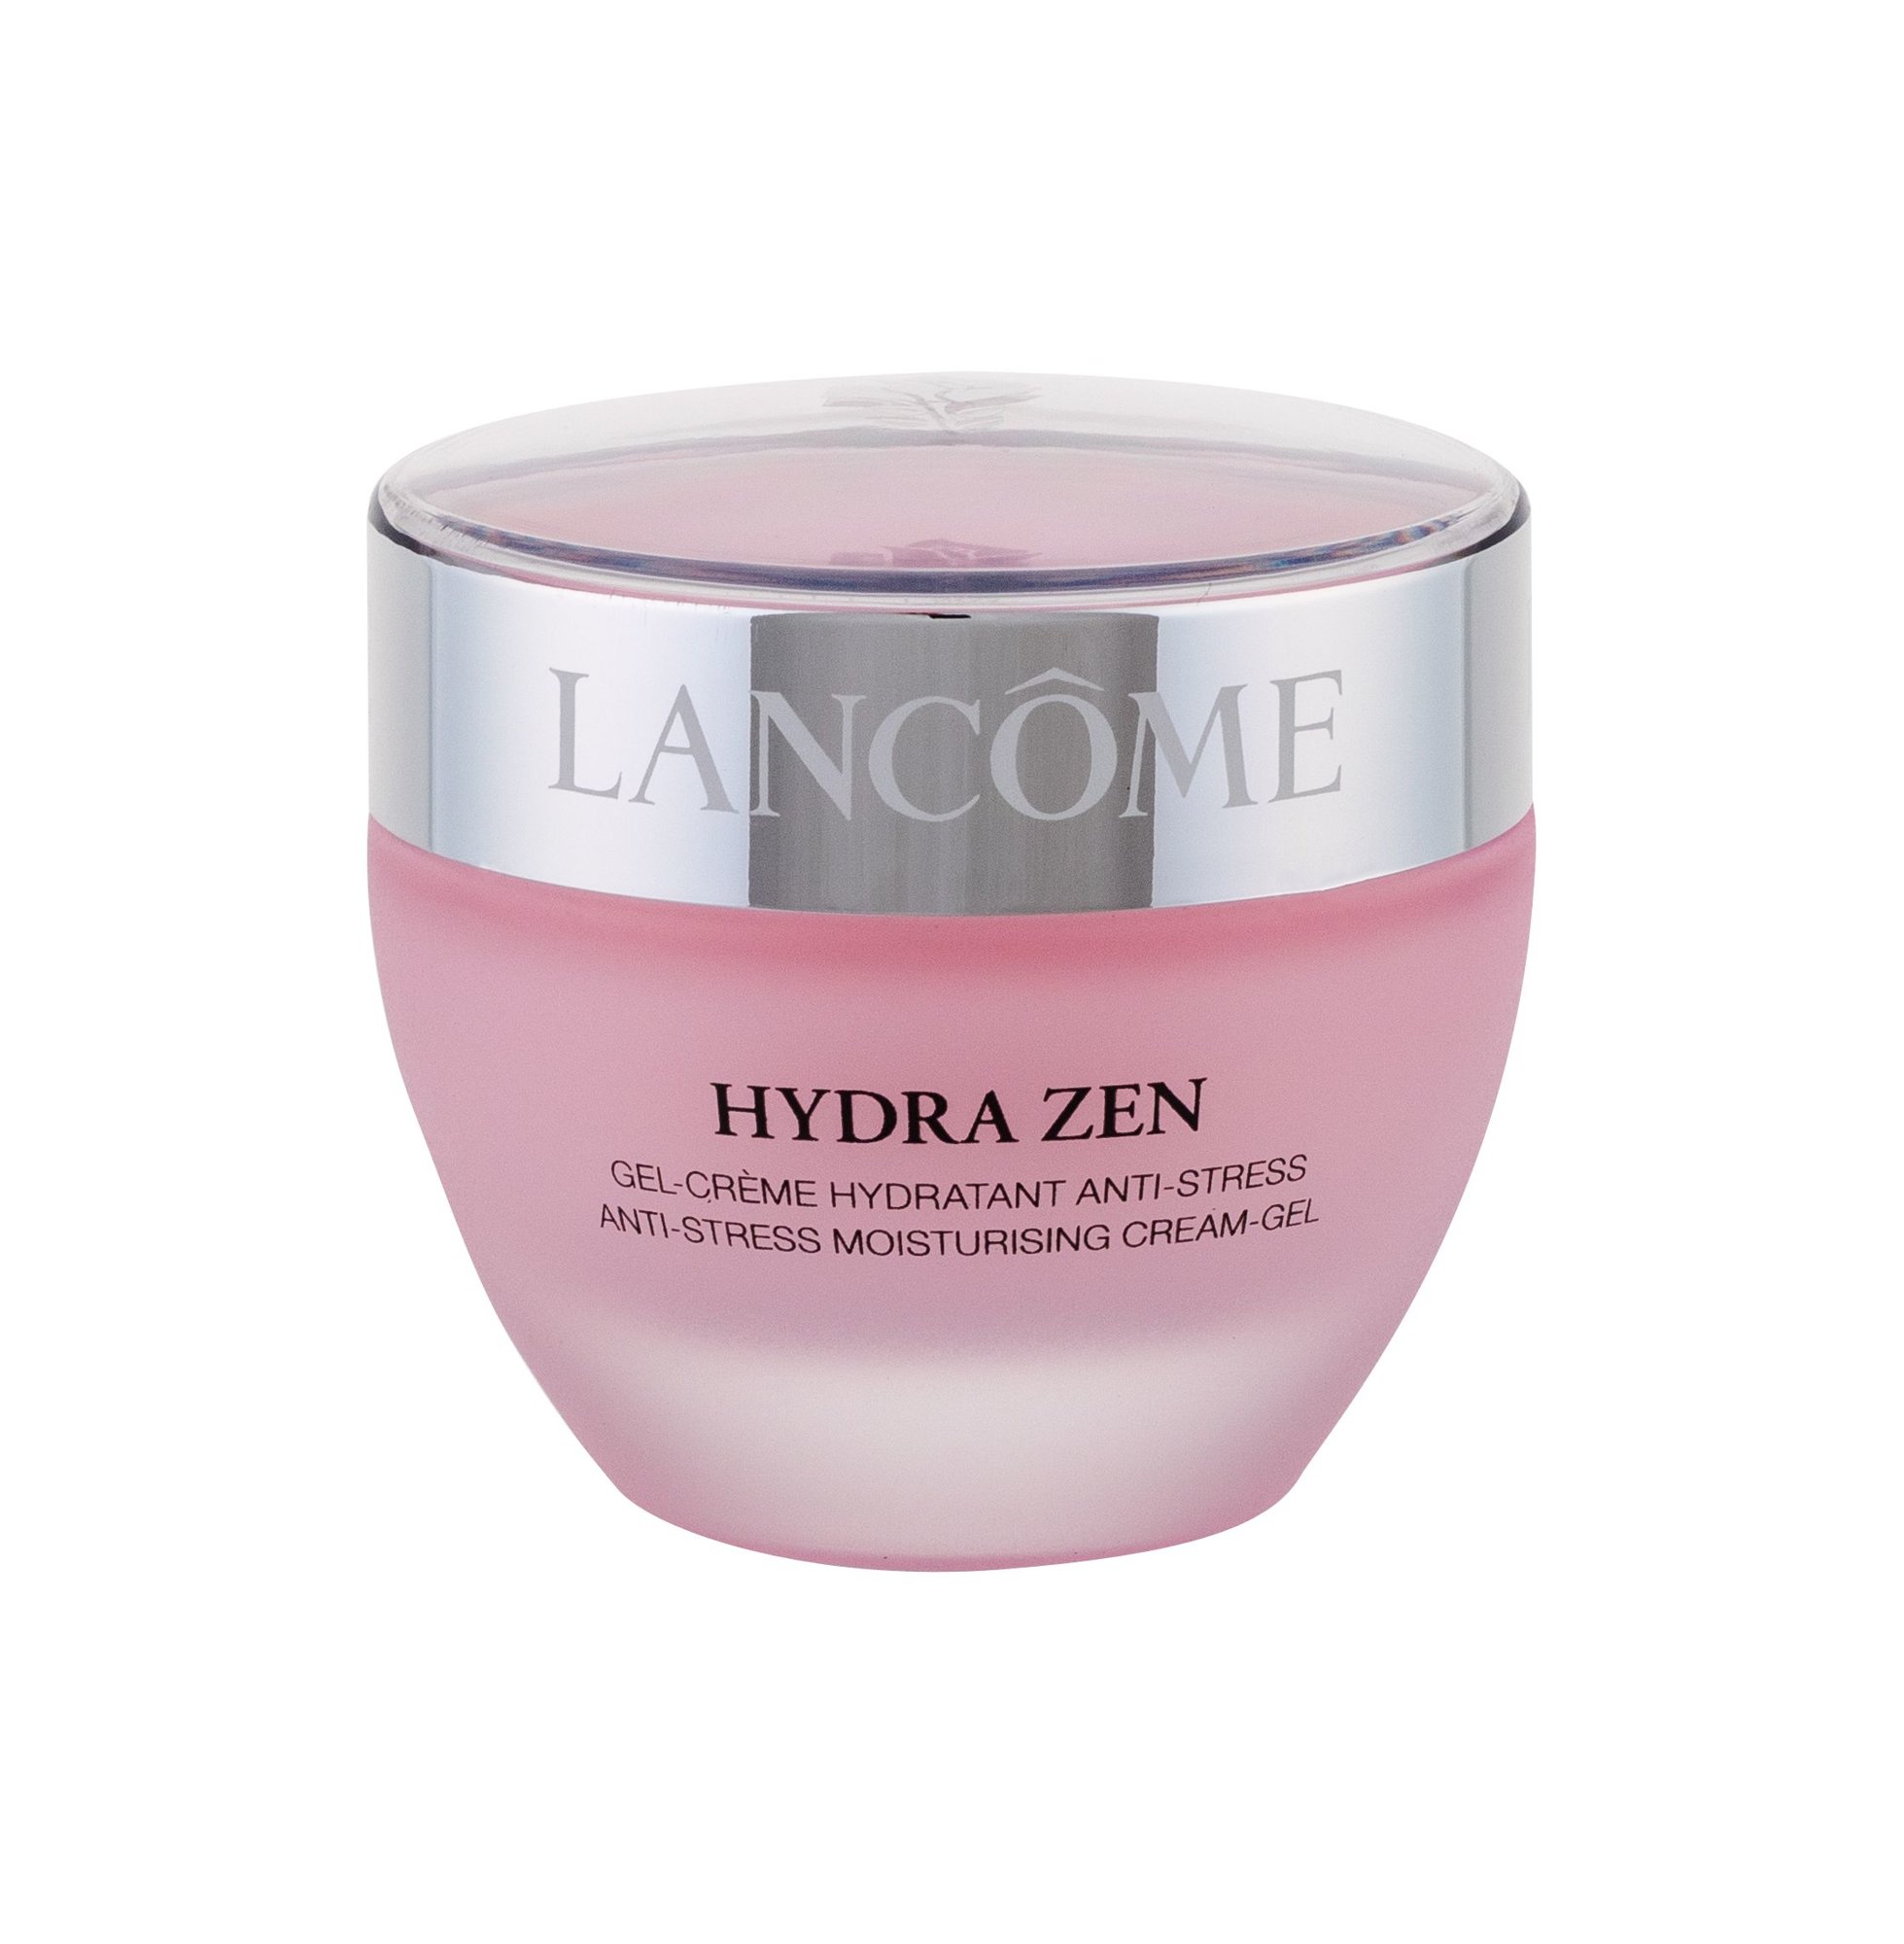 Lancome Hydra Zen Cream-Gel veido gelis